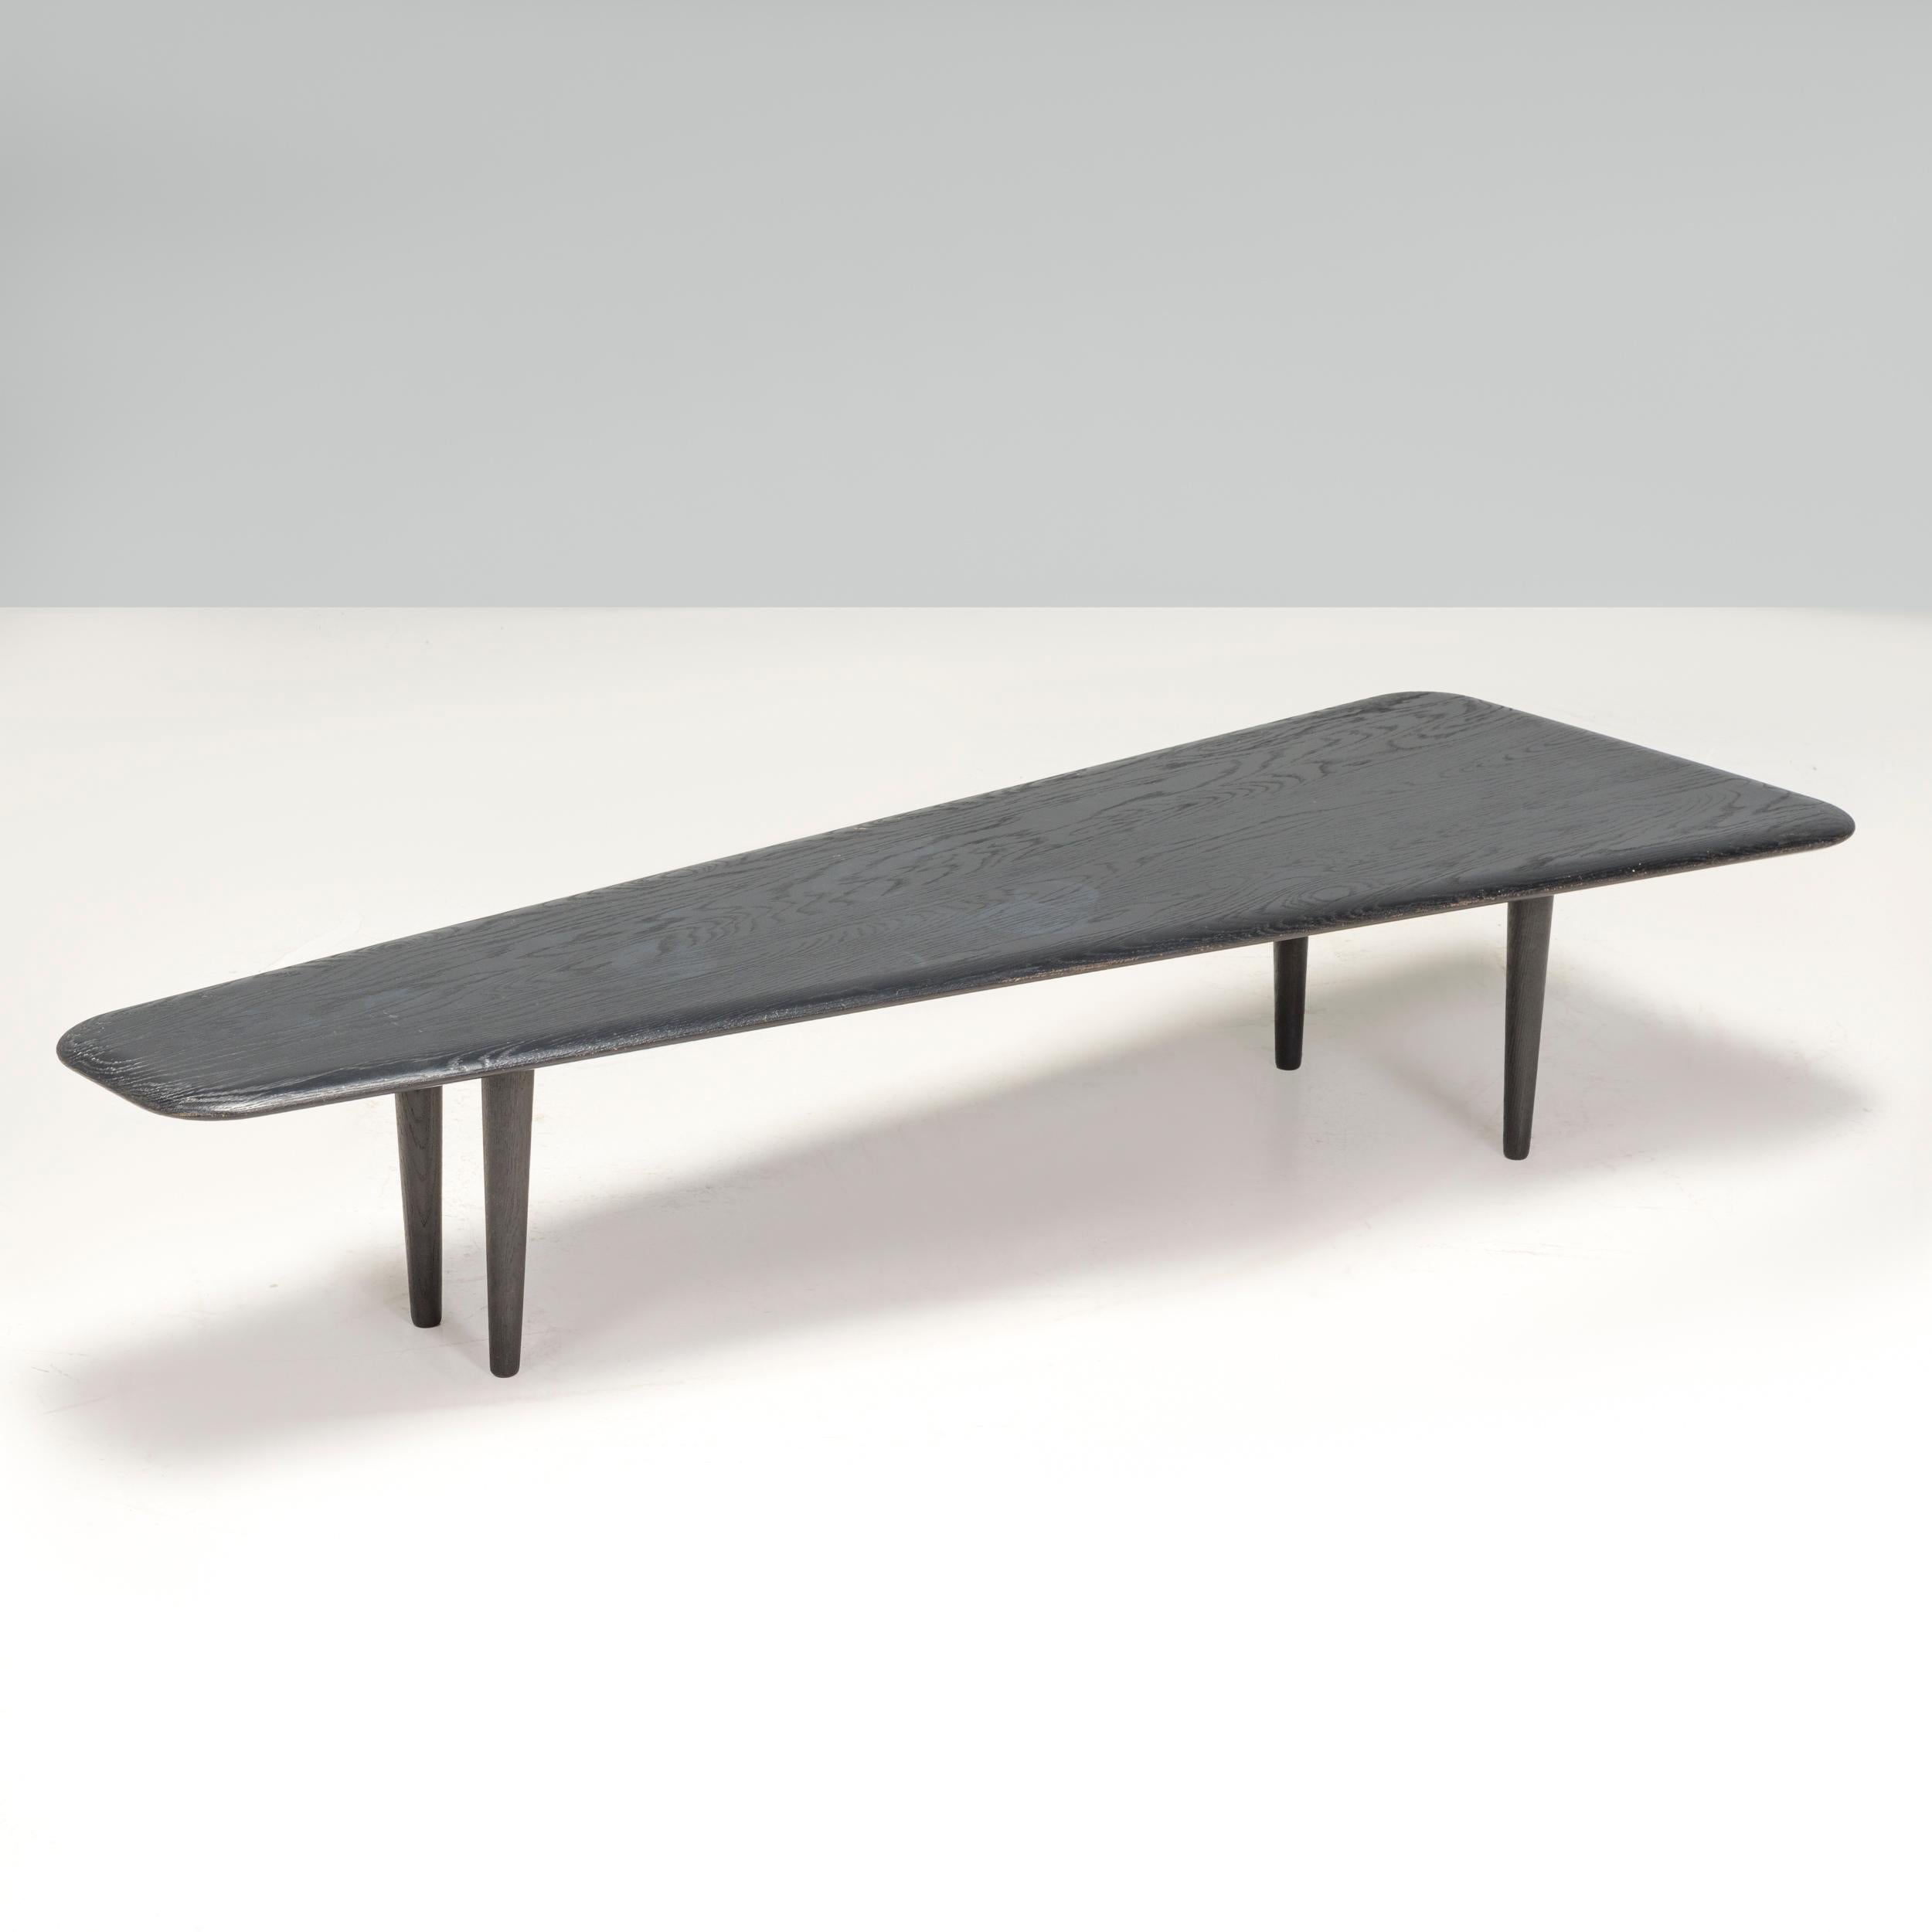 Entworfen von Tom Dixon, einem der bekanntesten britischen Designer des 21. Jahrhunderts, verbindet dieser niedrige Tisch aus dunkler Eichenplatte hochwertige MATERIALIEN mit einer schlichten Ästhetik.

 Das aus massiver, gekrönter Eiche gefertigte